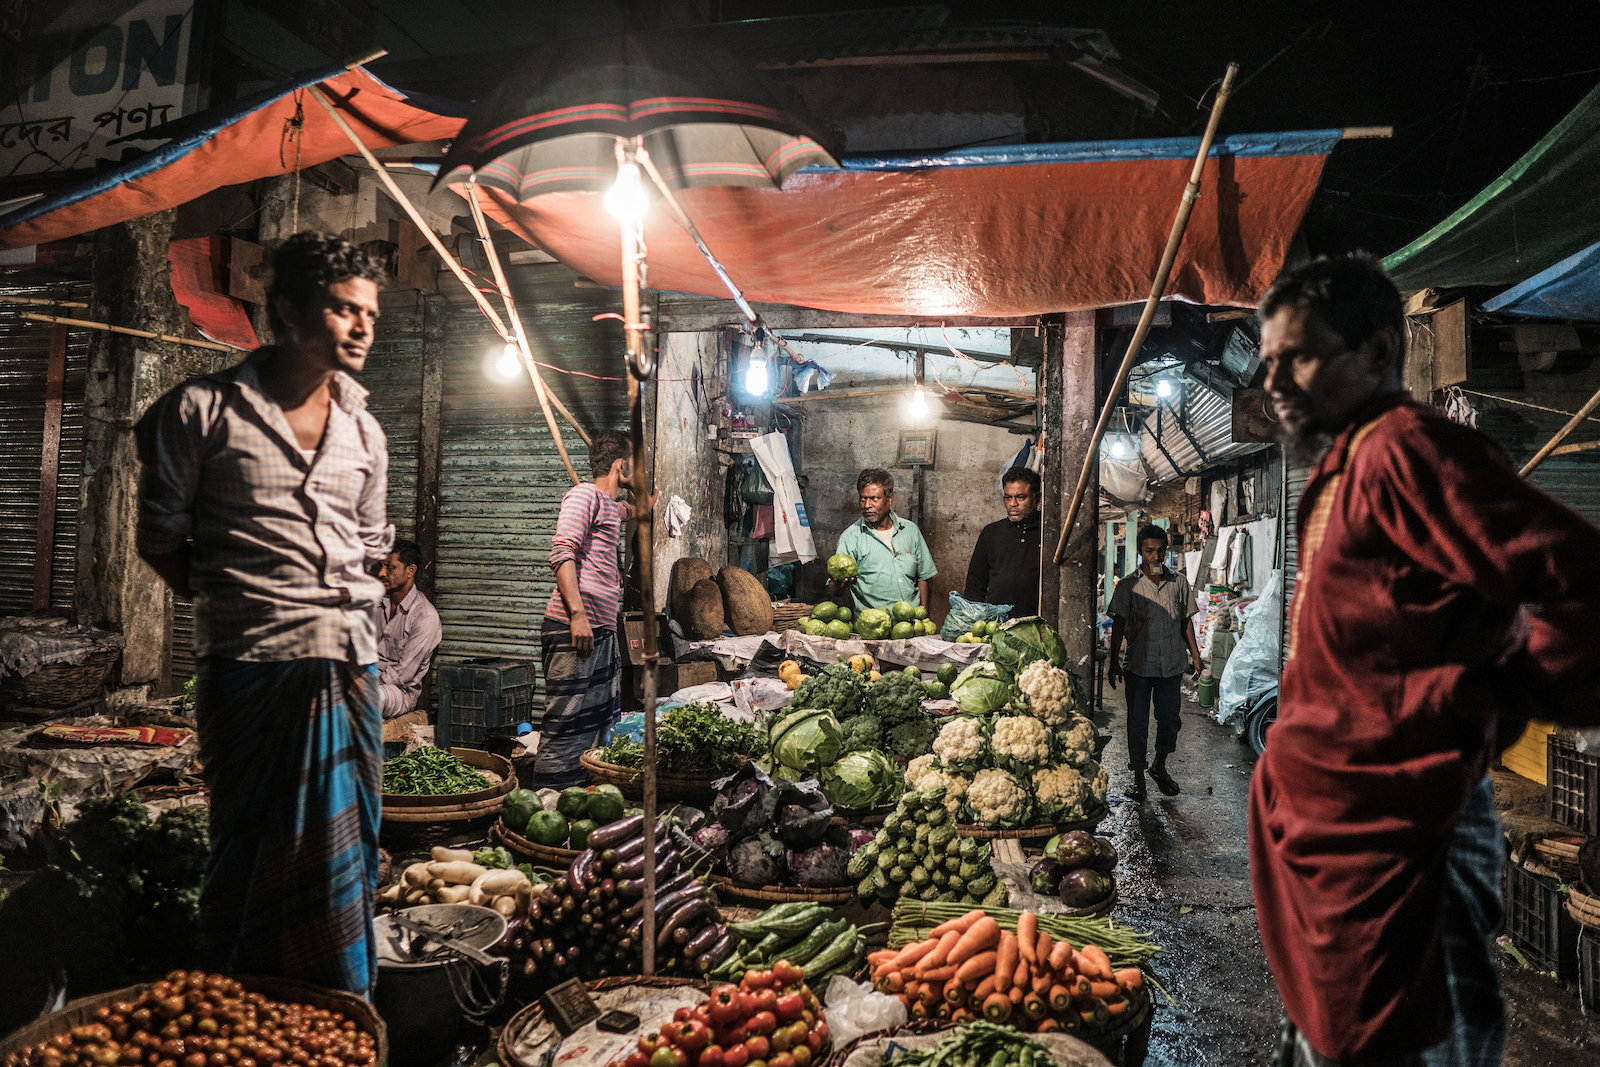 Street sellers in Bangladesh